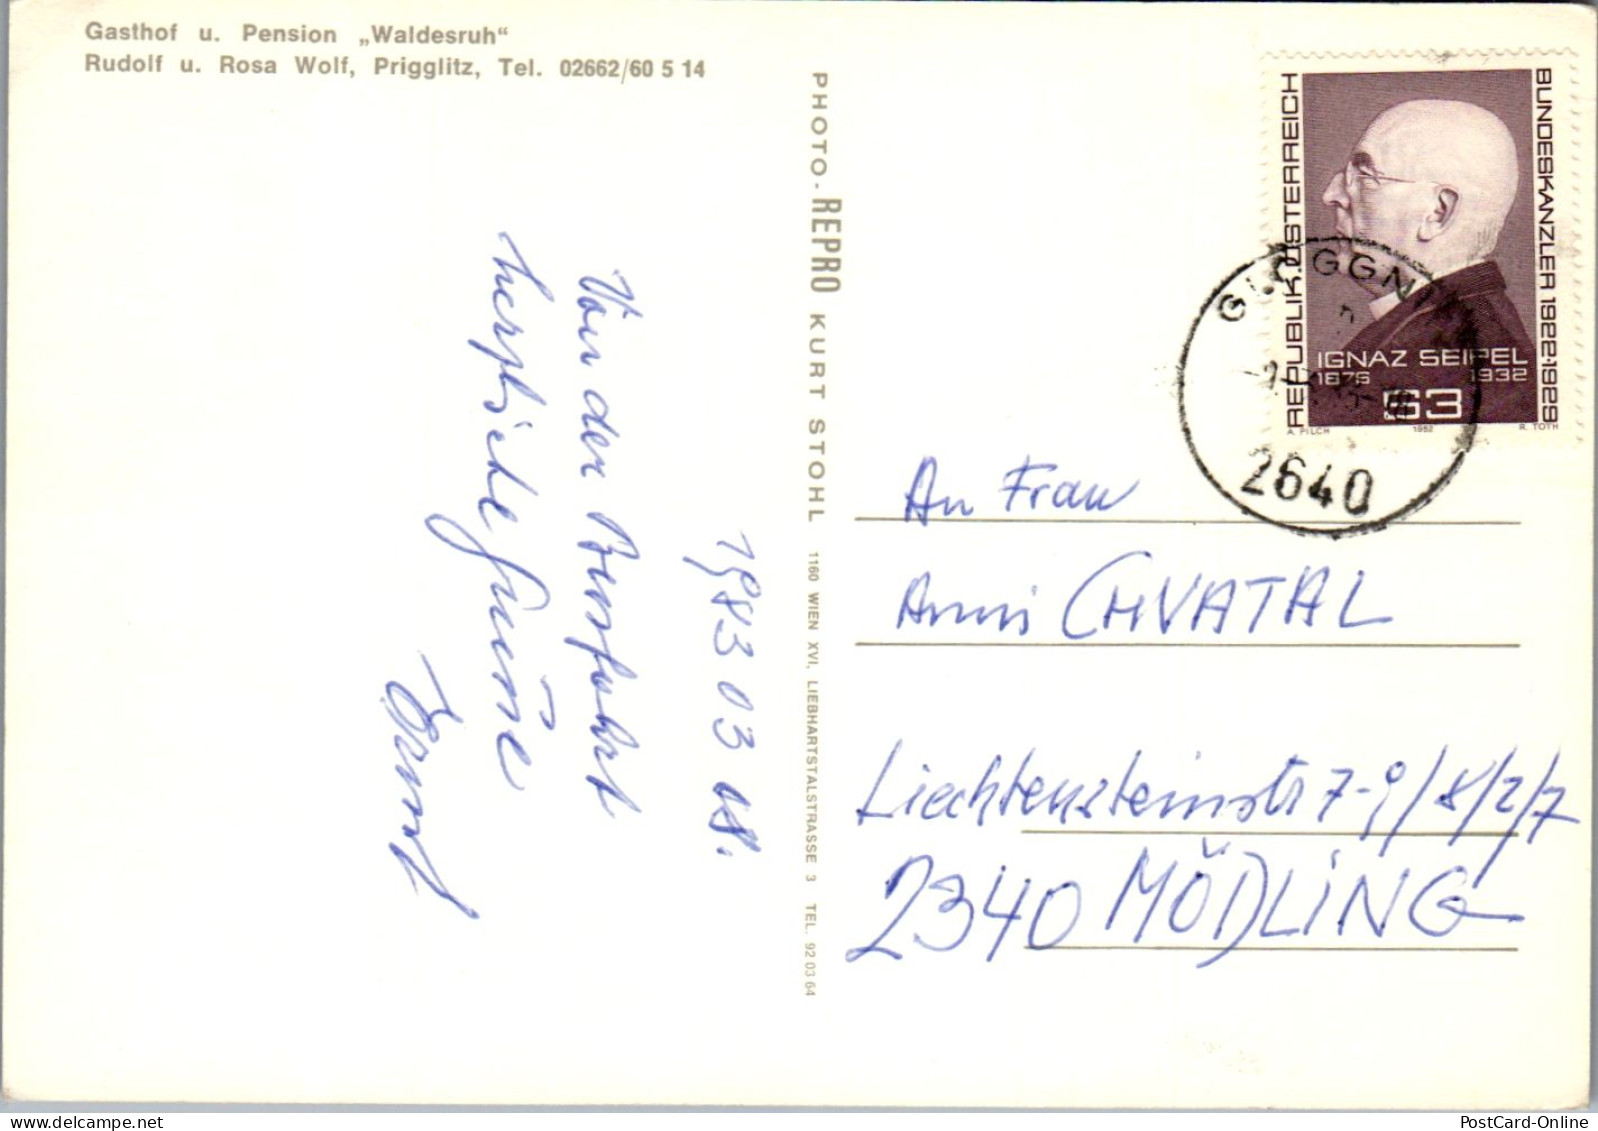 47367 - Niederösterreich - Prigglitz , Heimat Jagdmuseum , Pension Wolf , Waldesruh , Rudolf U. Rosa Wolf - Gel. 1983 - Neunkirchen